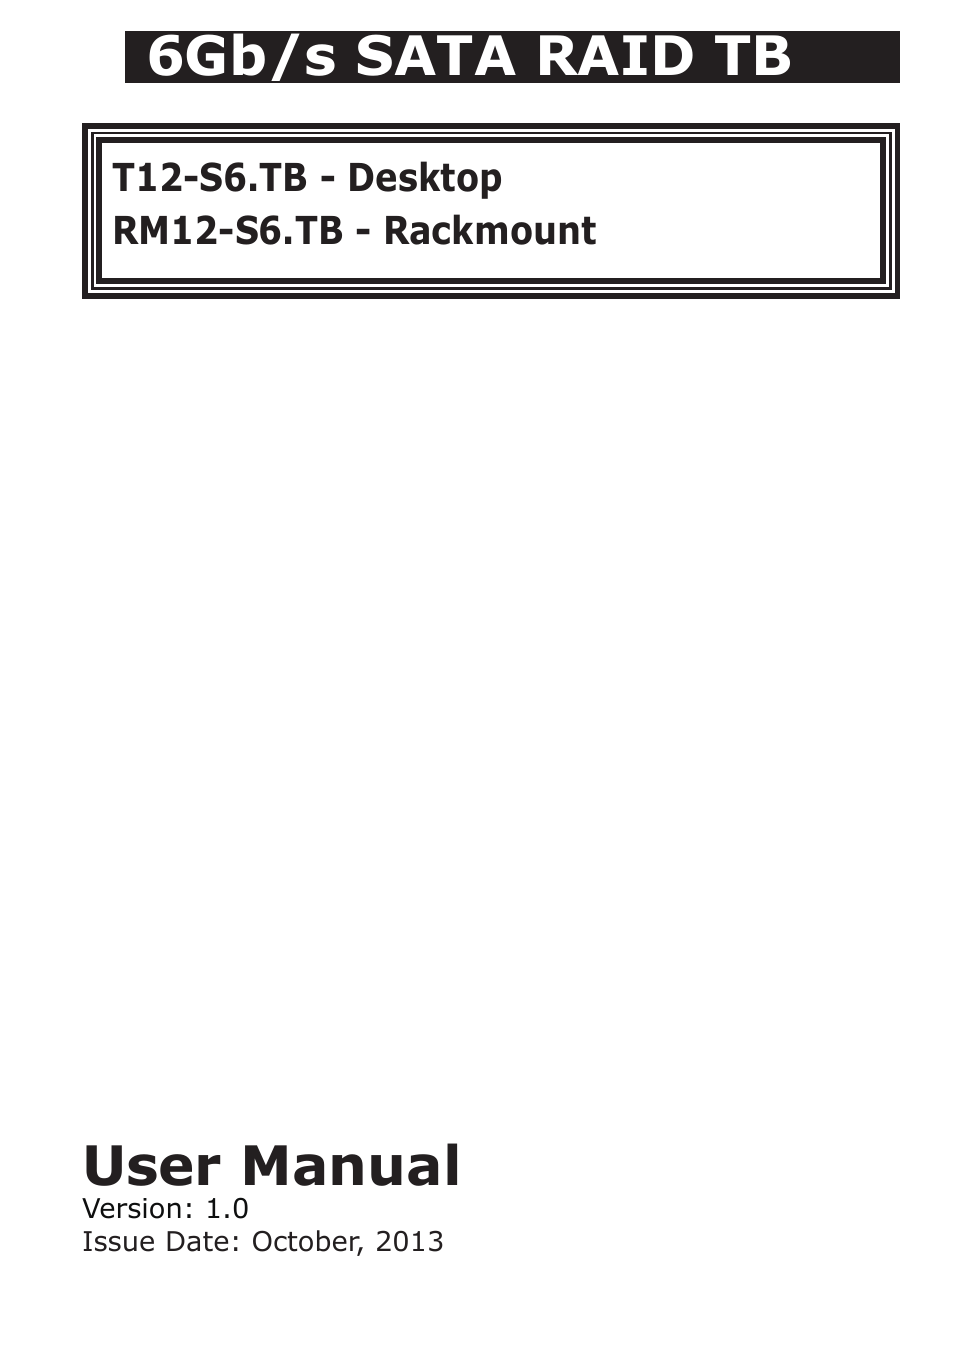 RM12-S6.TB - Rackmount